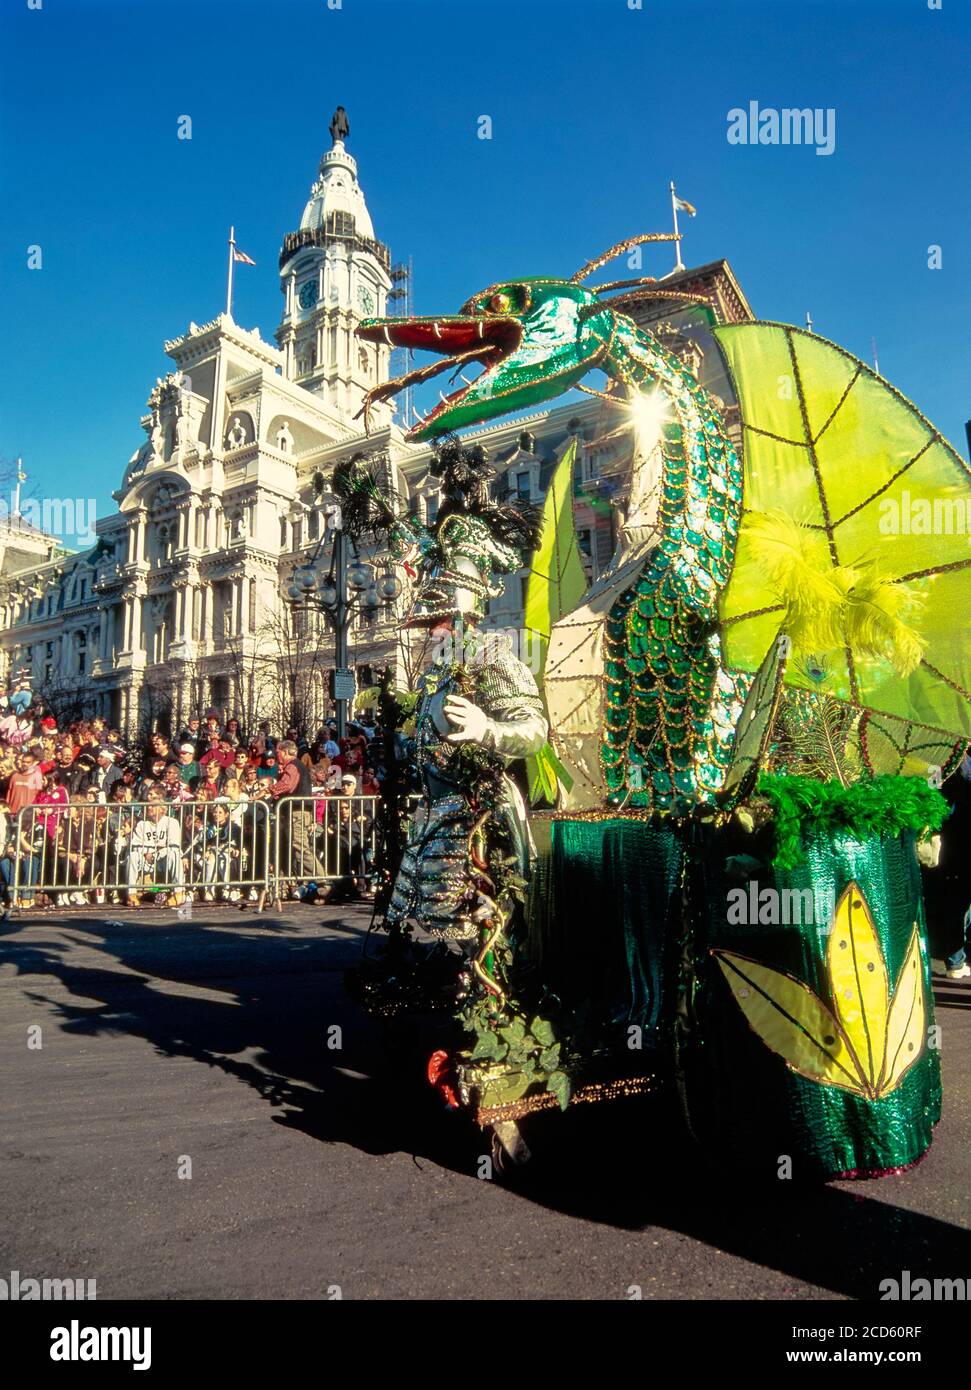 Trajes coloridos durante el desfile de Mummers, Filadelfia, Pensilvania, EE.UU Foto de stock